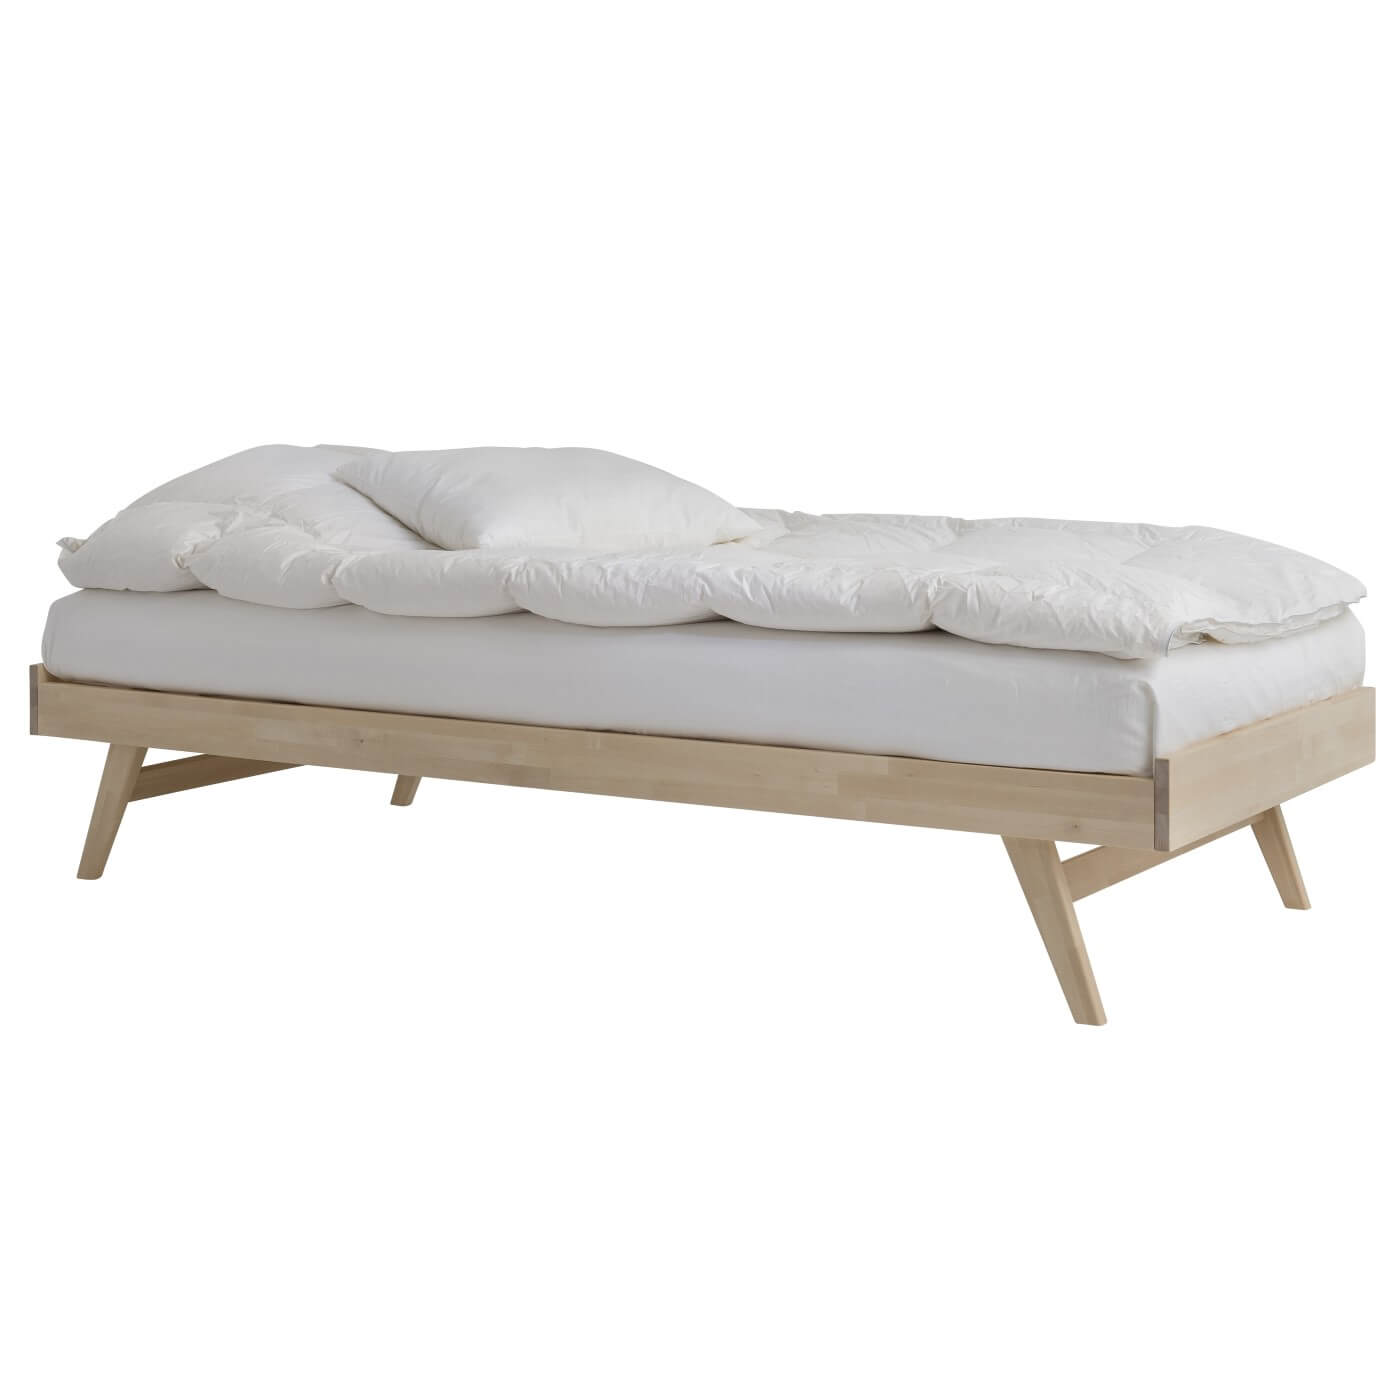 Łóżko na nóżkach NOTTE. Łóżko drewniane 90x200 widoczne w całości. Na łóżku z materacem leży biała kołdra i poduszka. Skandynawski design